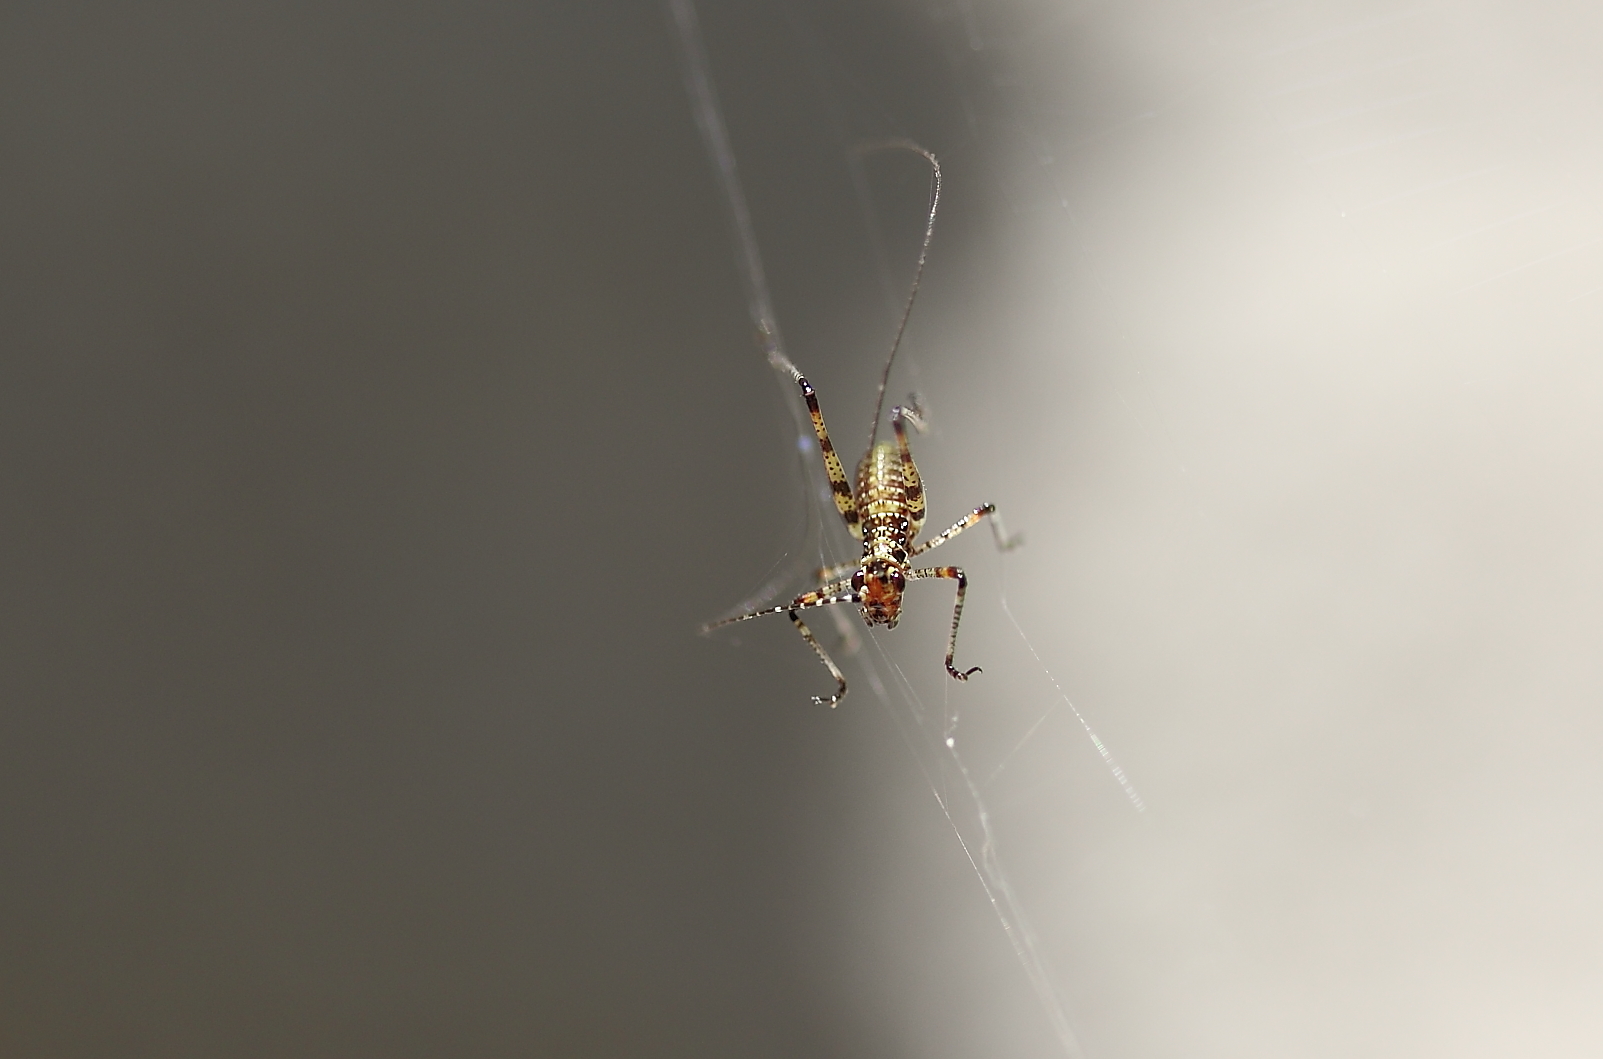 Im Netz der Spinne......